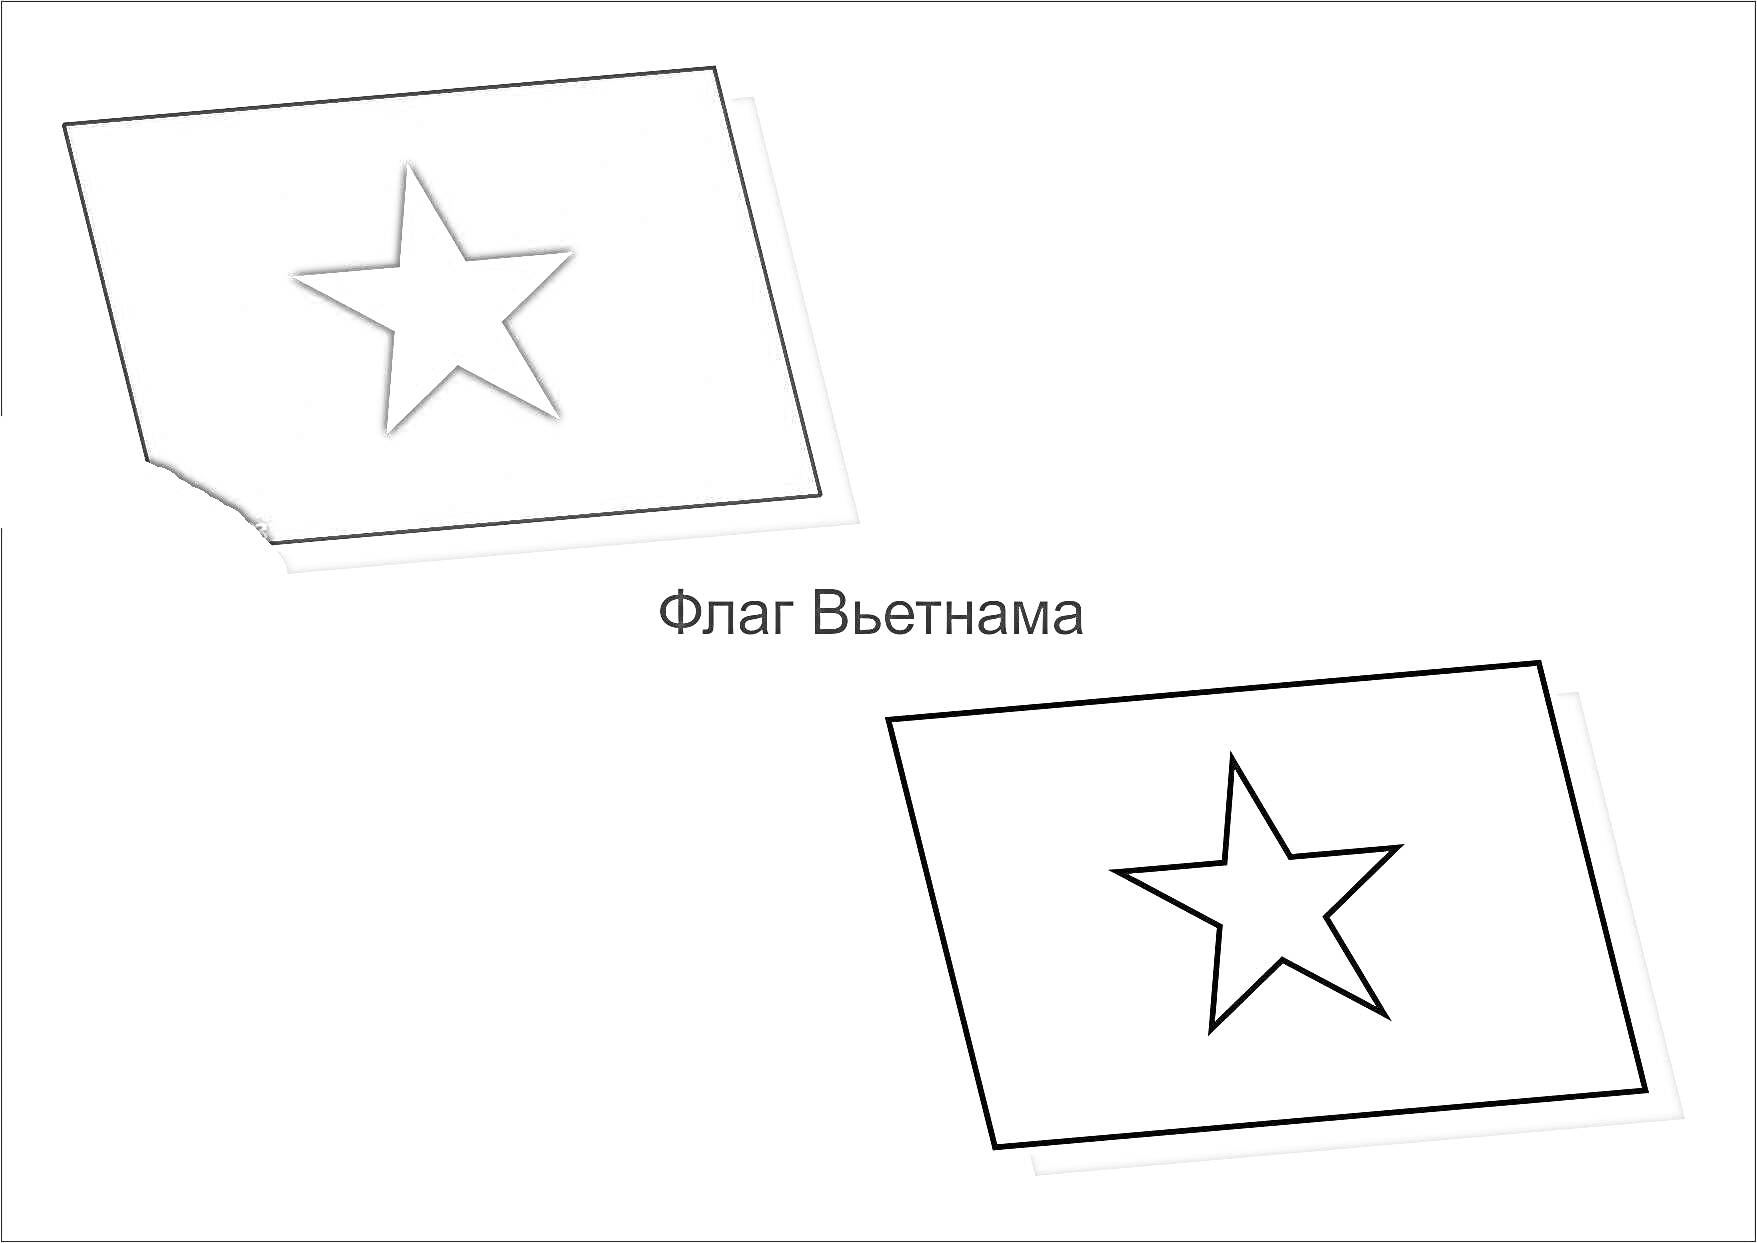 Раскраска Флаг Вьетнама с раскрашенным и черно-белым изображением звезды